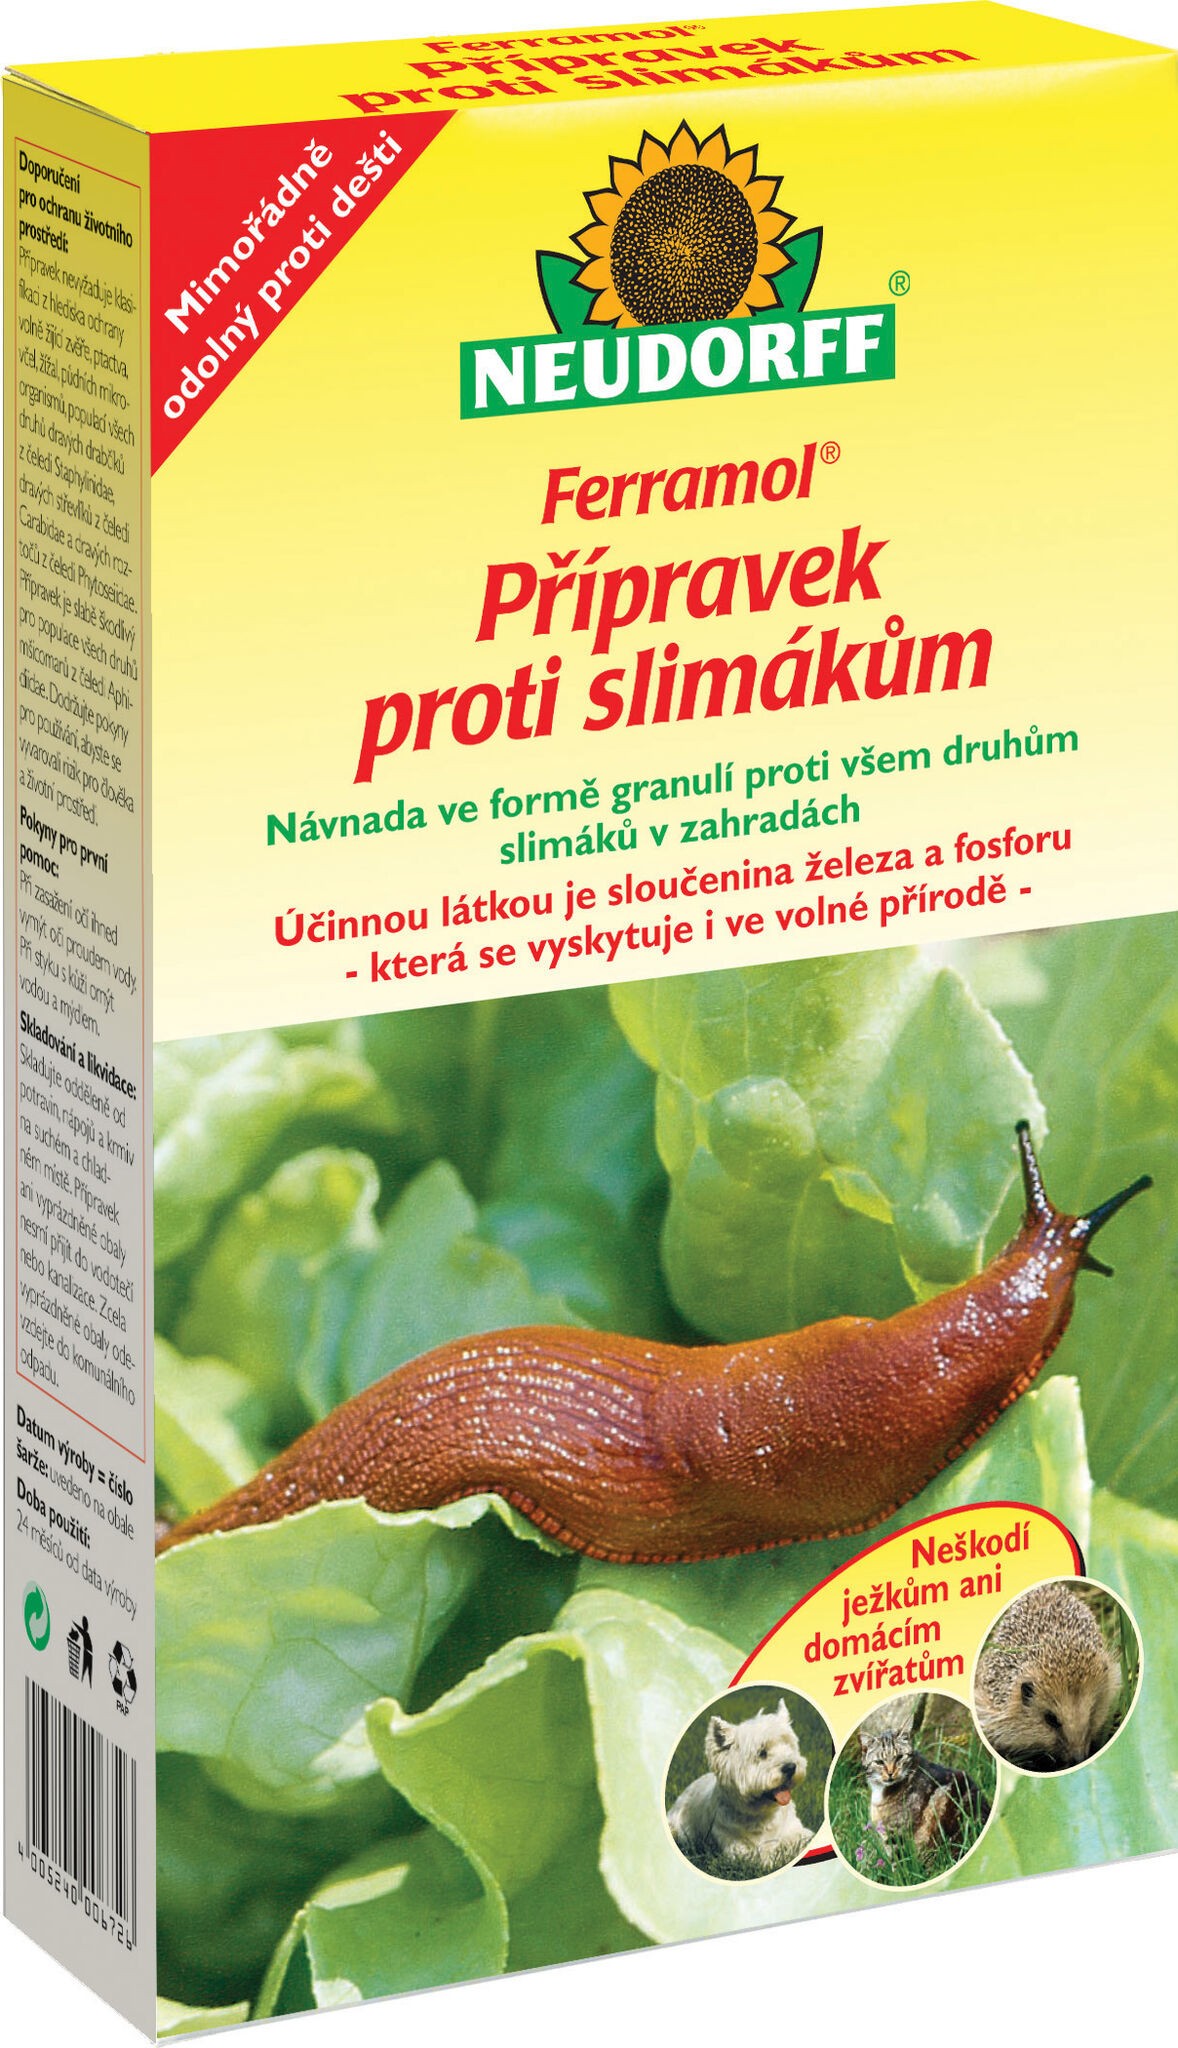 Ferramol přípravek proti slimákům 200 g Ferramol 000214